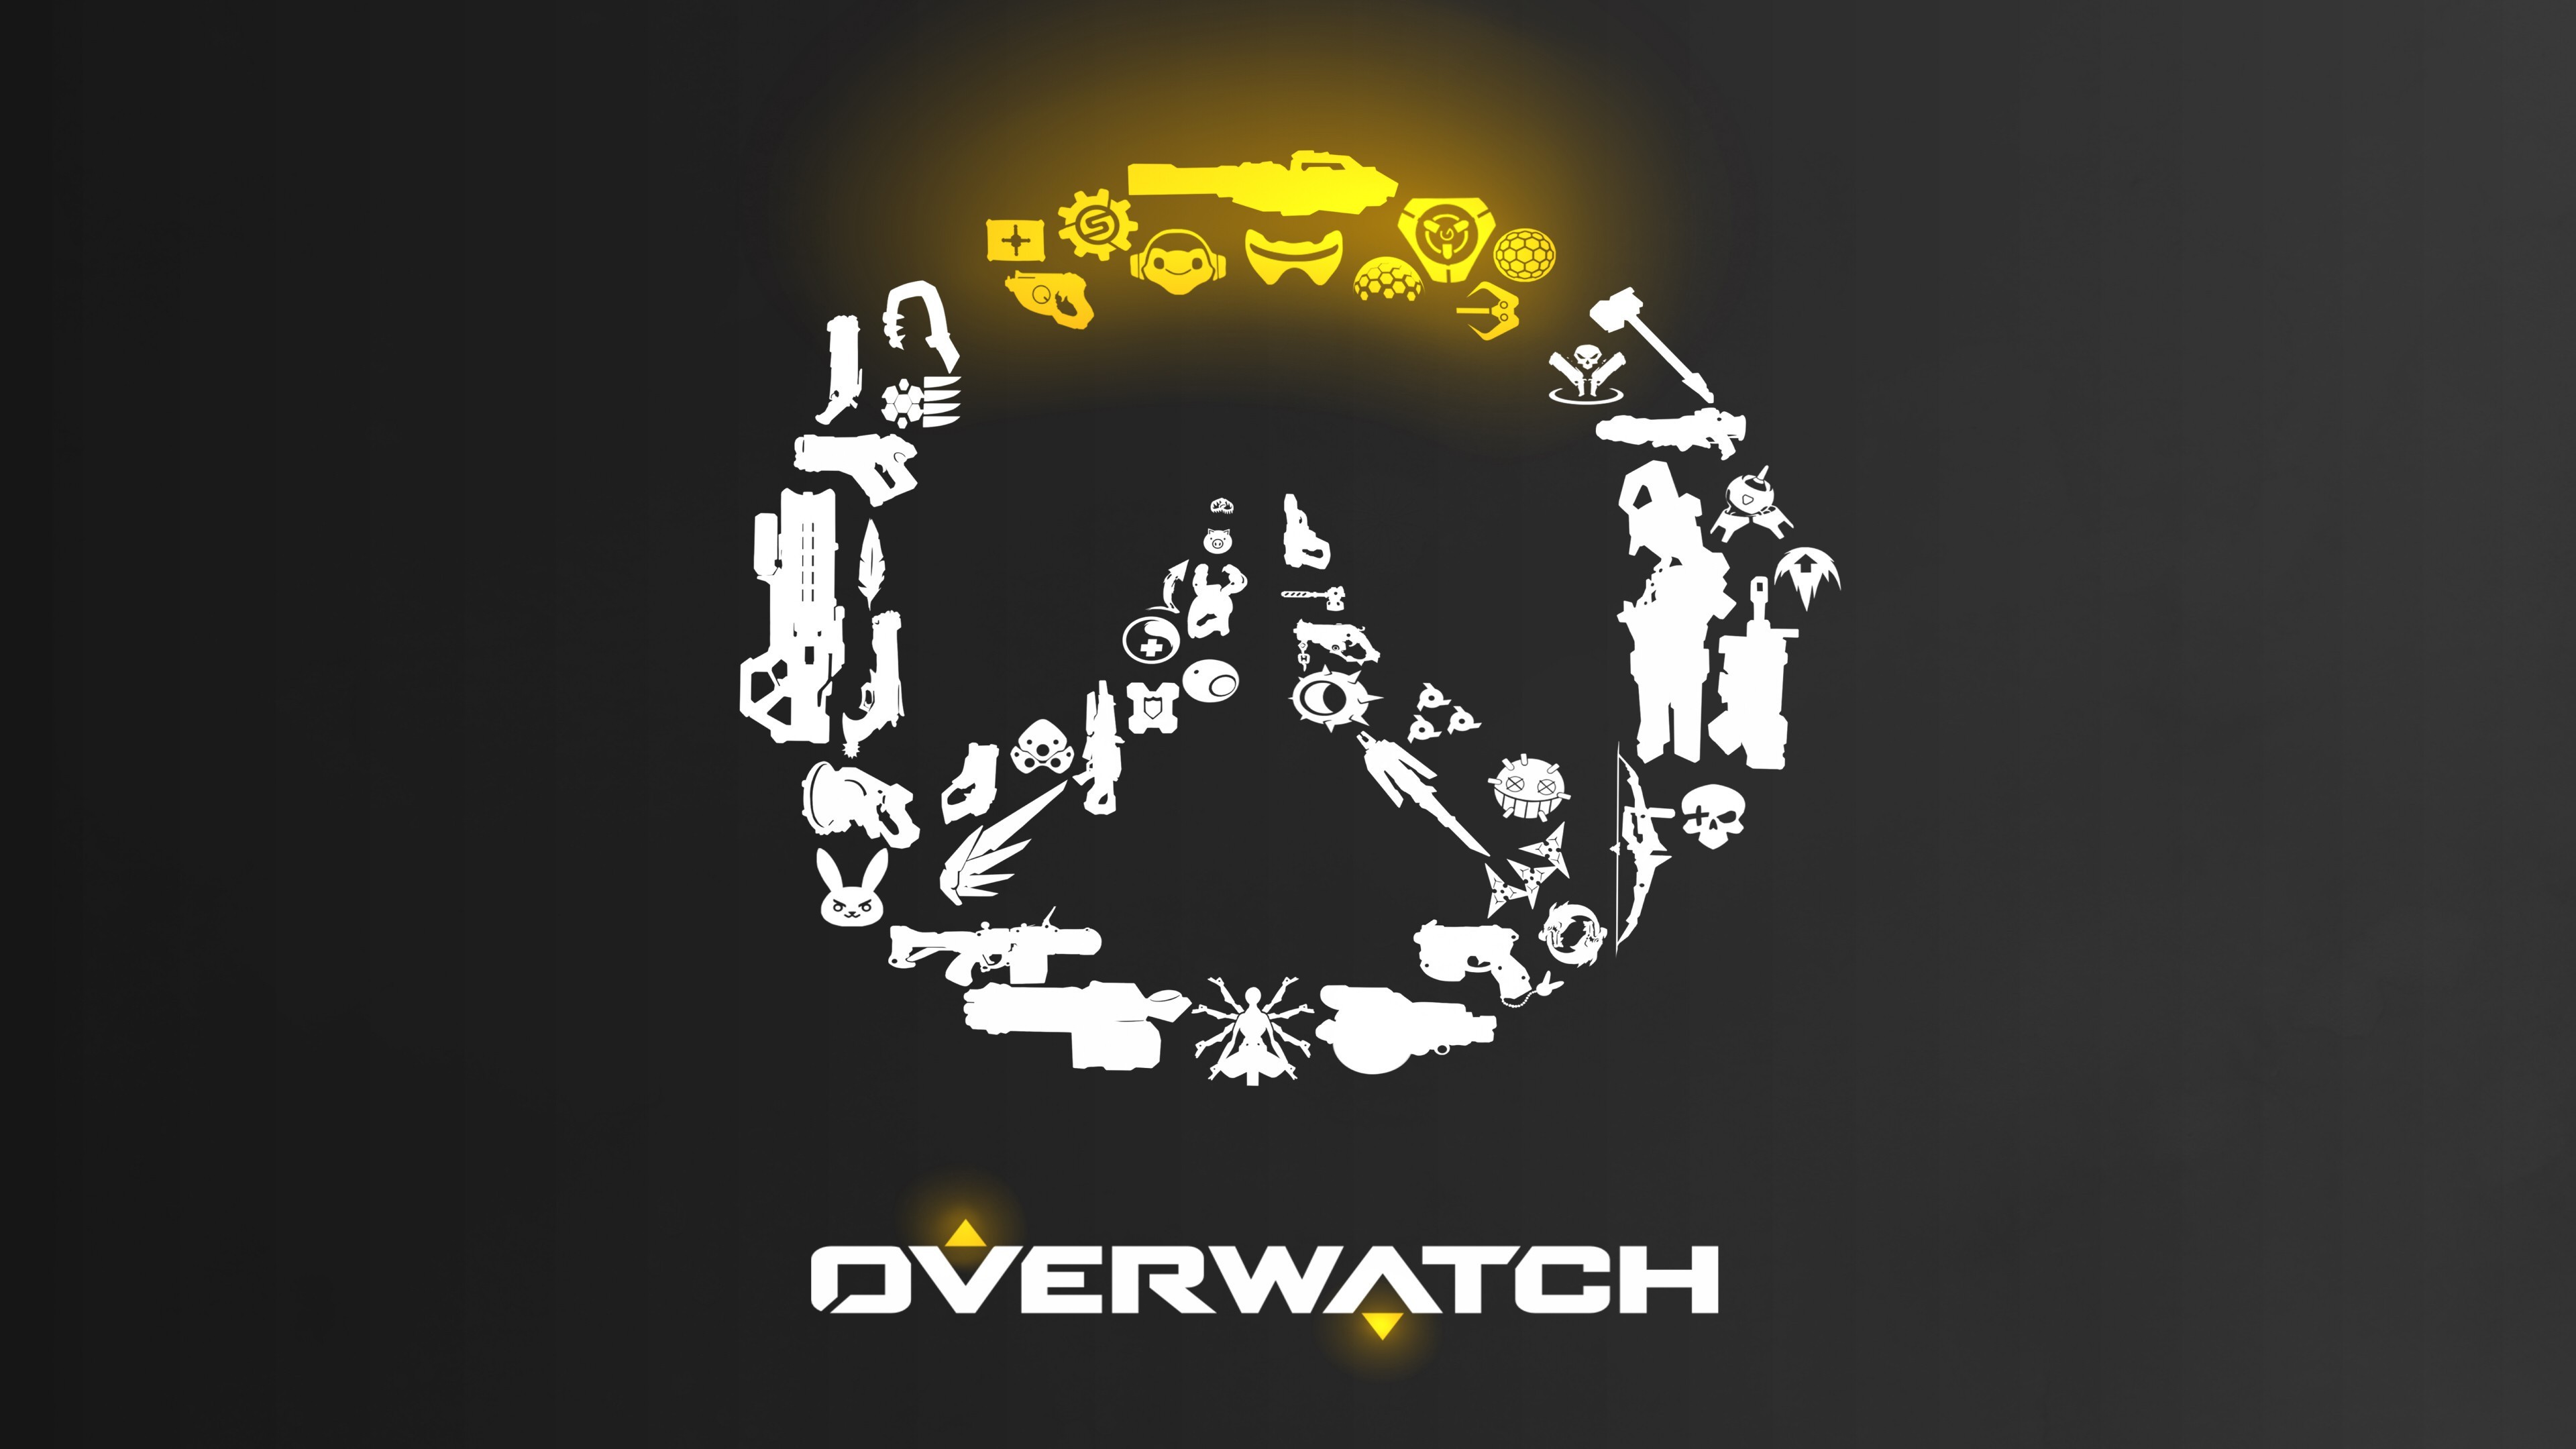 overwatch logo wallpapers Wallpapers